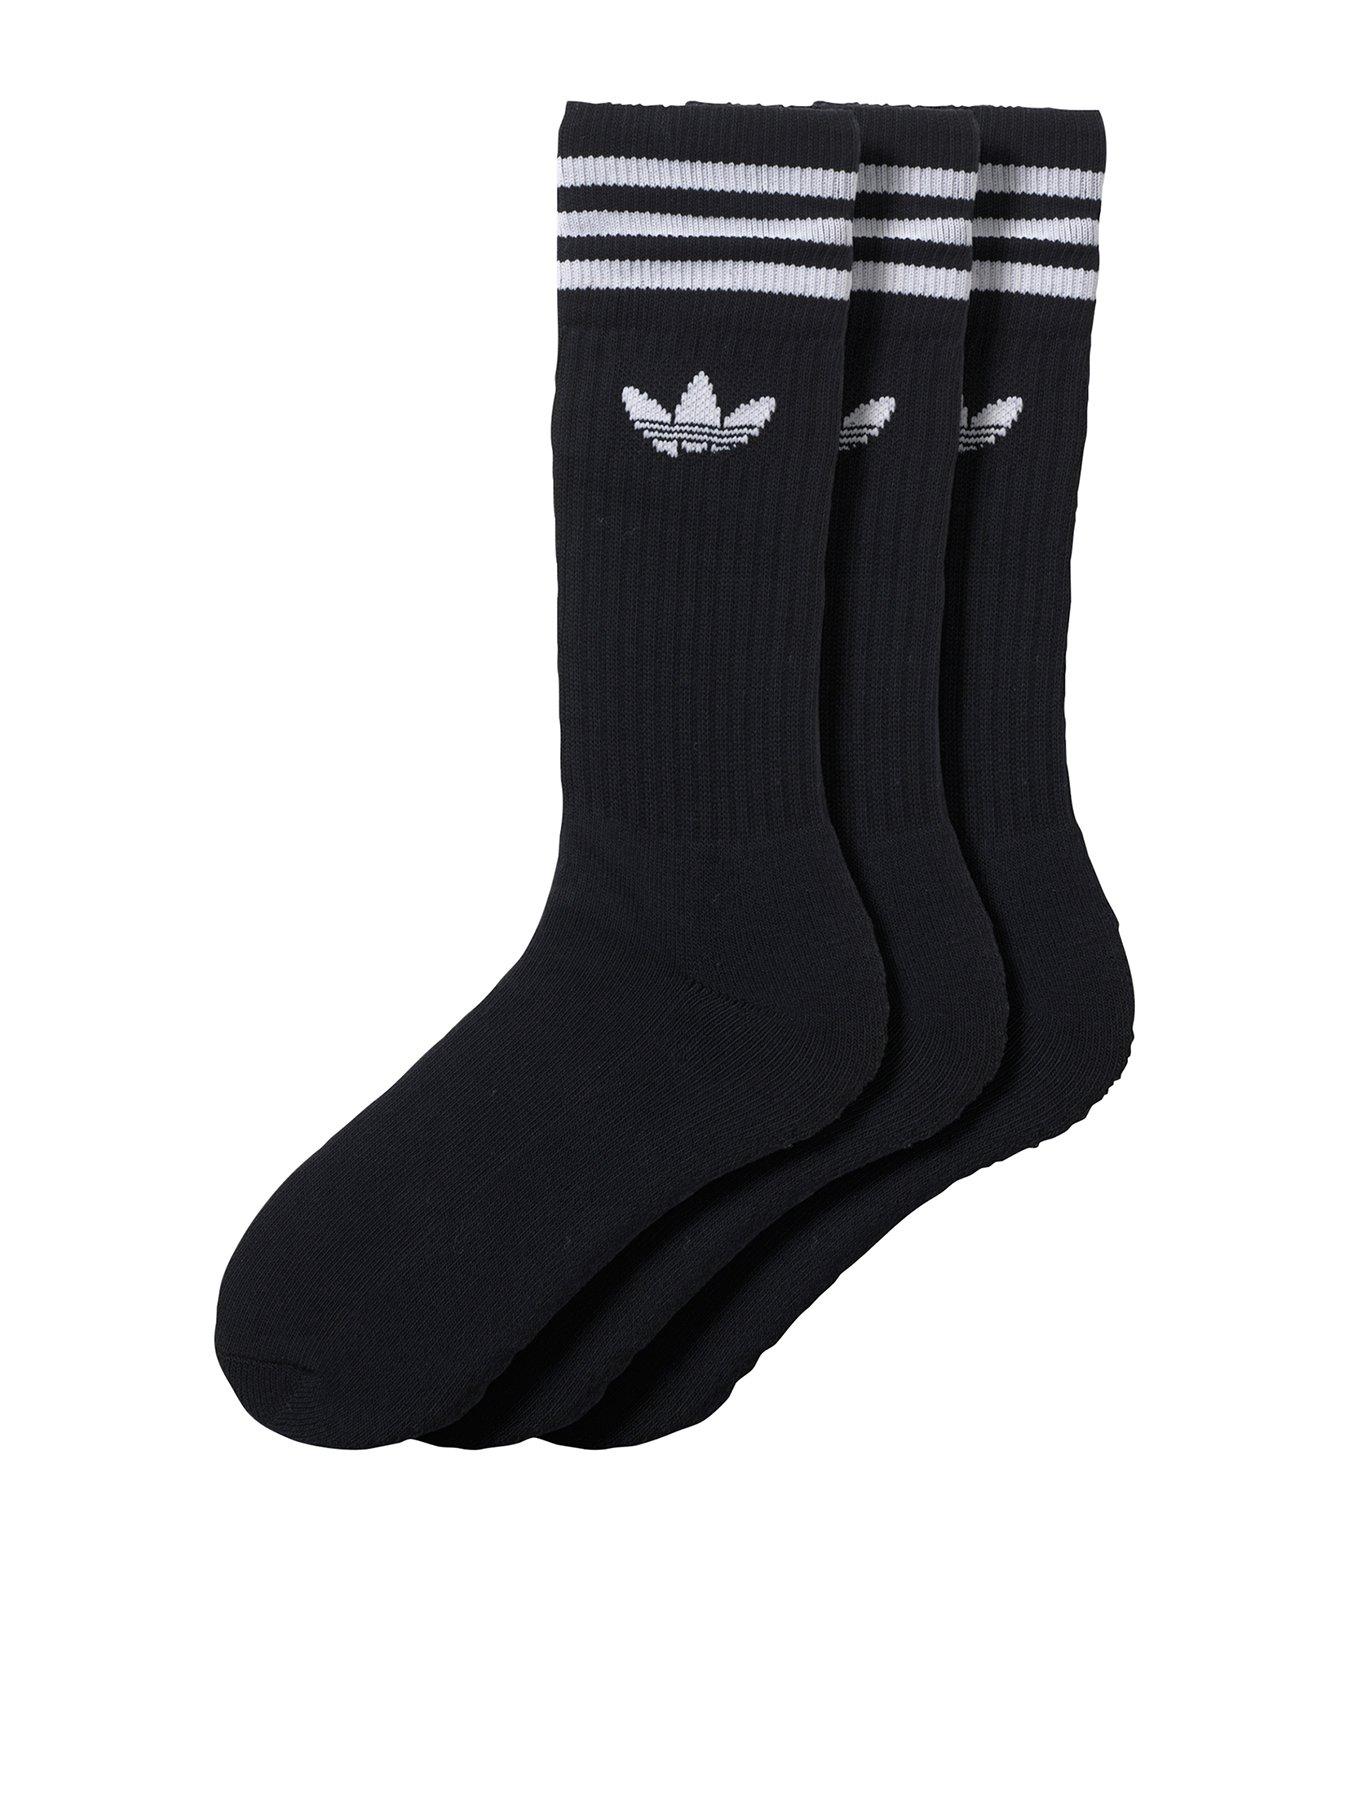 adidas socks on sale